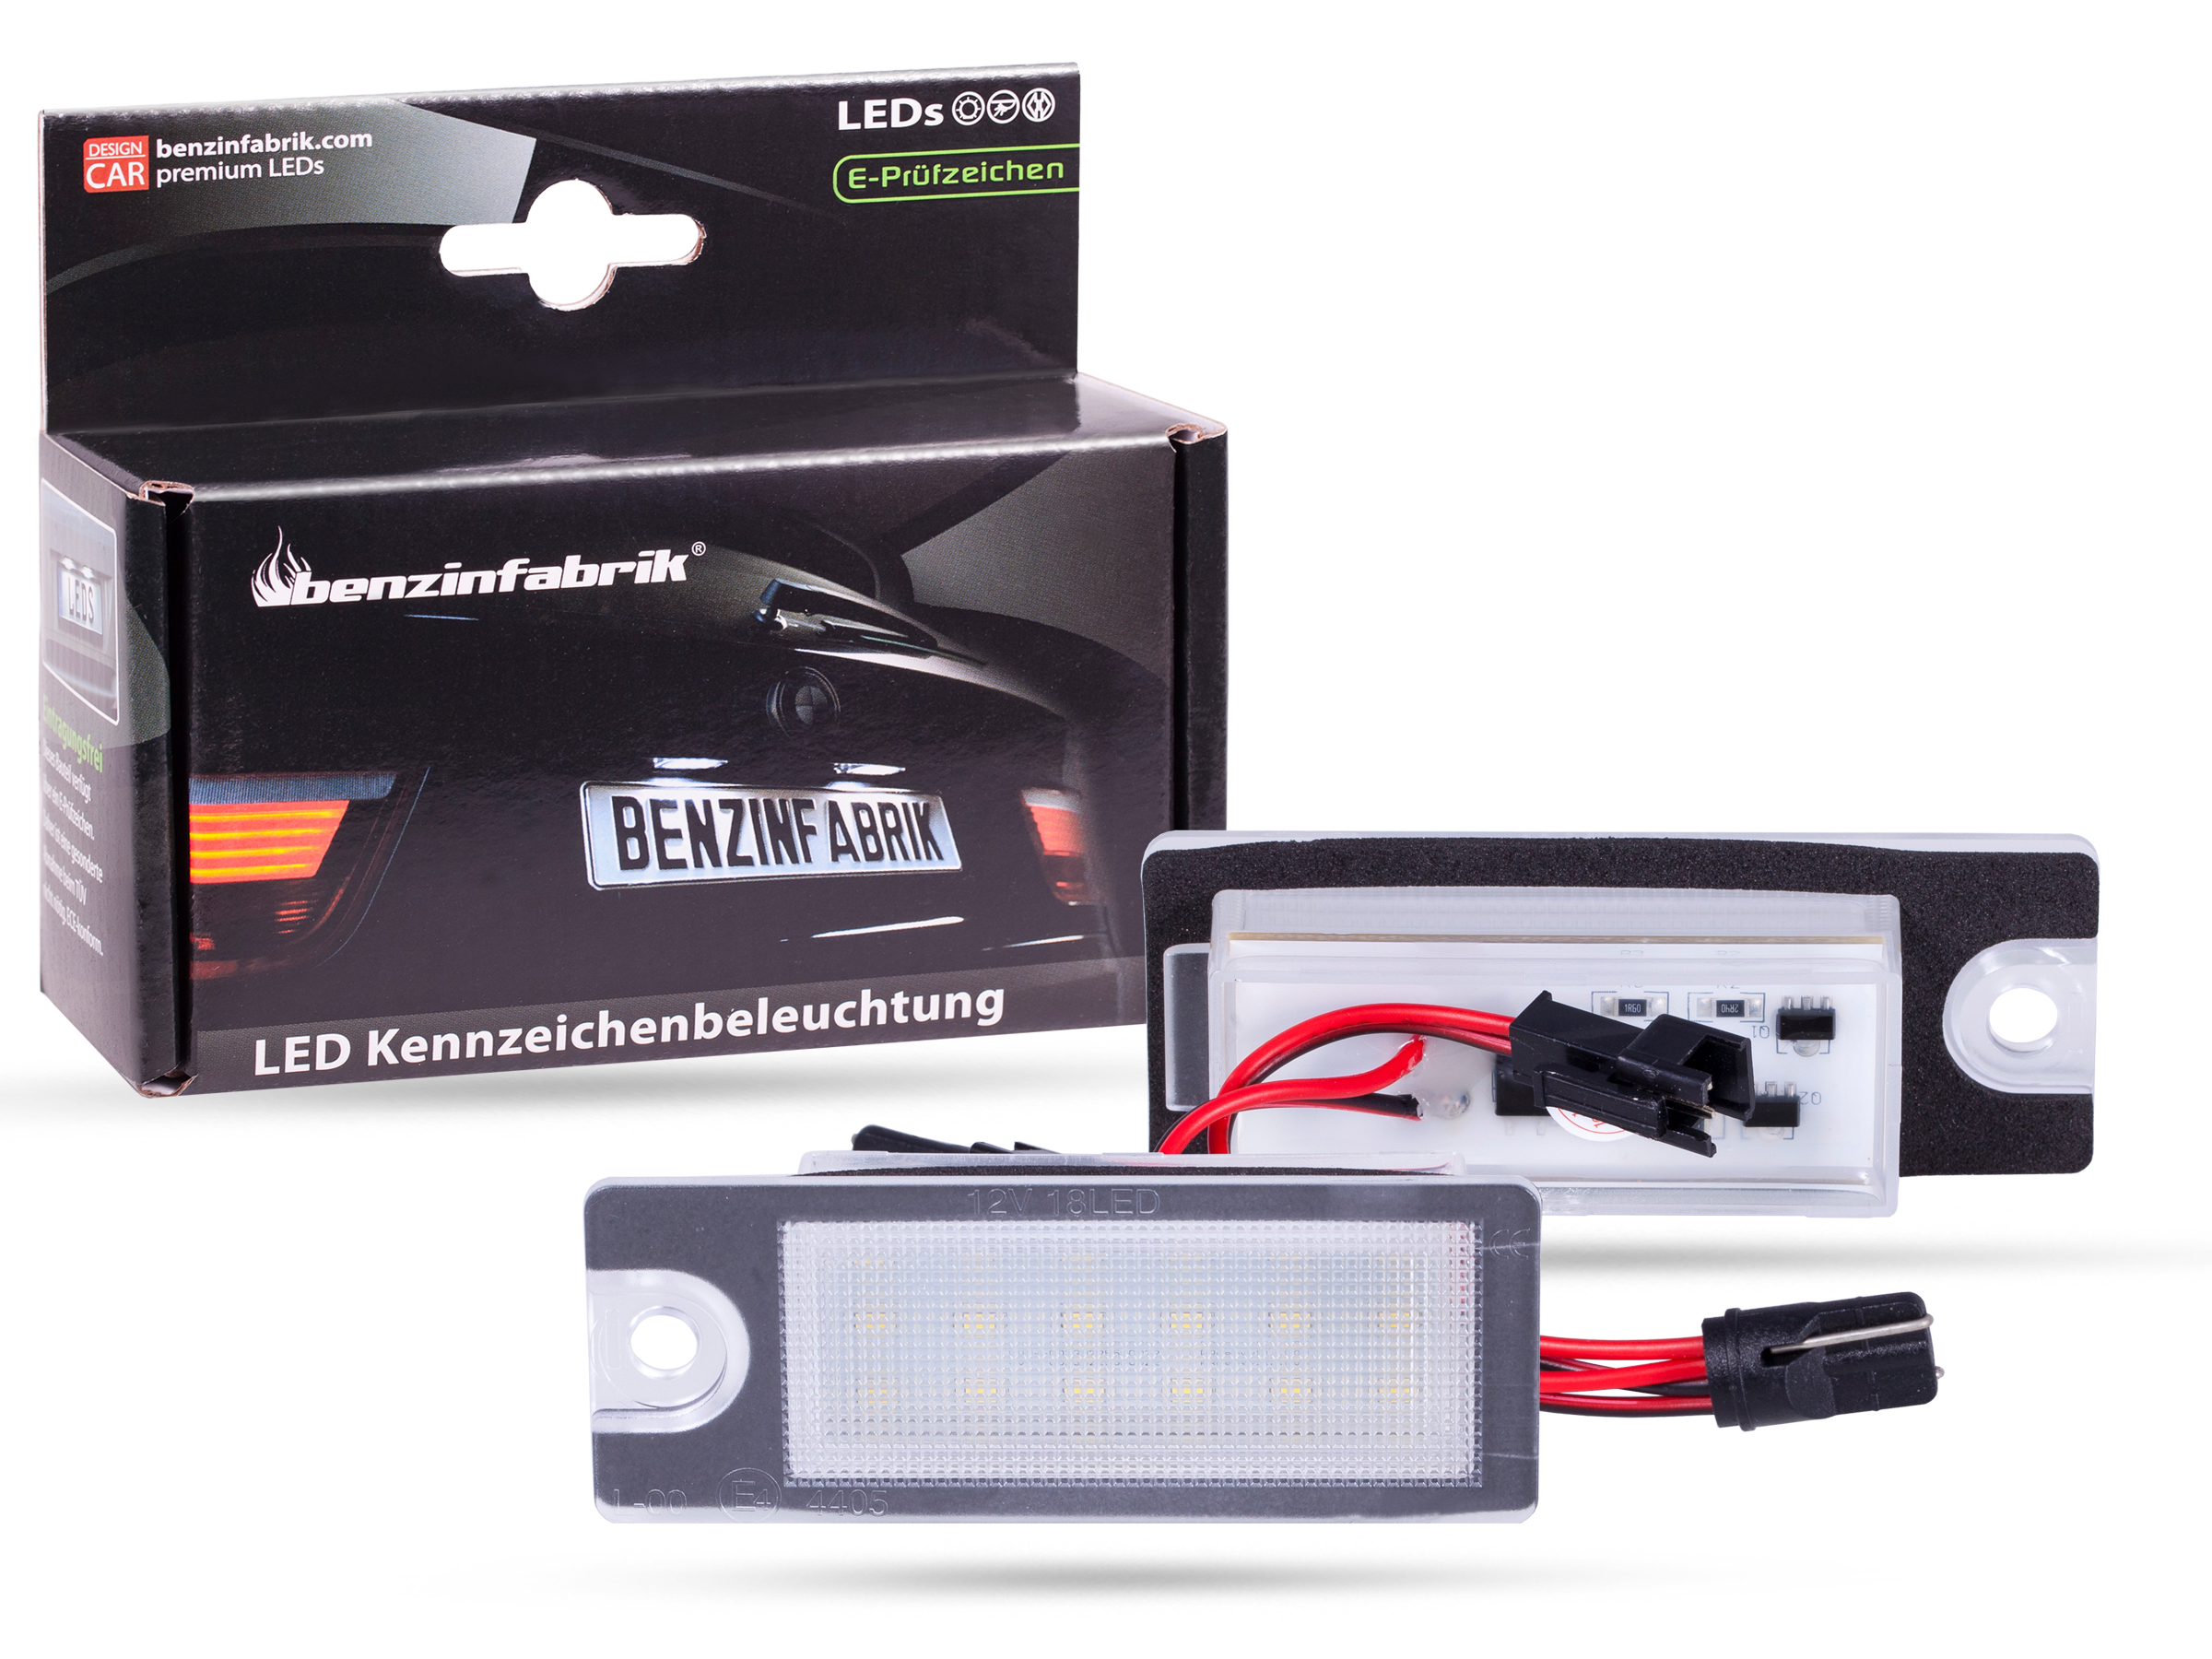 LED Kennzeichenbeleuchtung Module Volvo S80 Bj.: 98-06, mit E-Prüfzeichen, LED Kennzeichenbeleuchtung für Volvo, LED Kennzeichenbeleuchtung